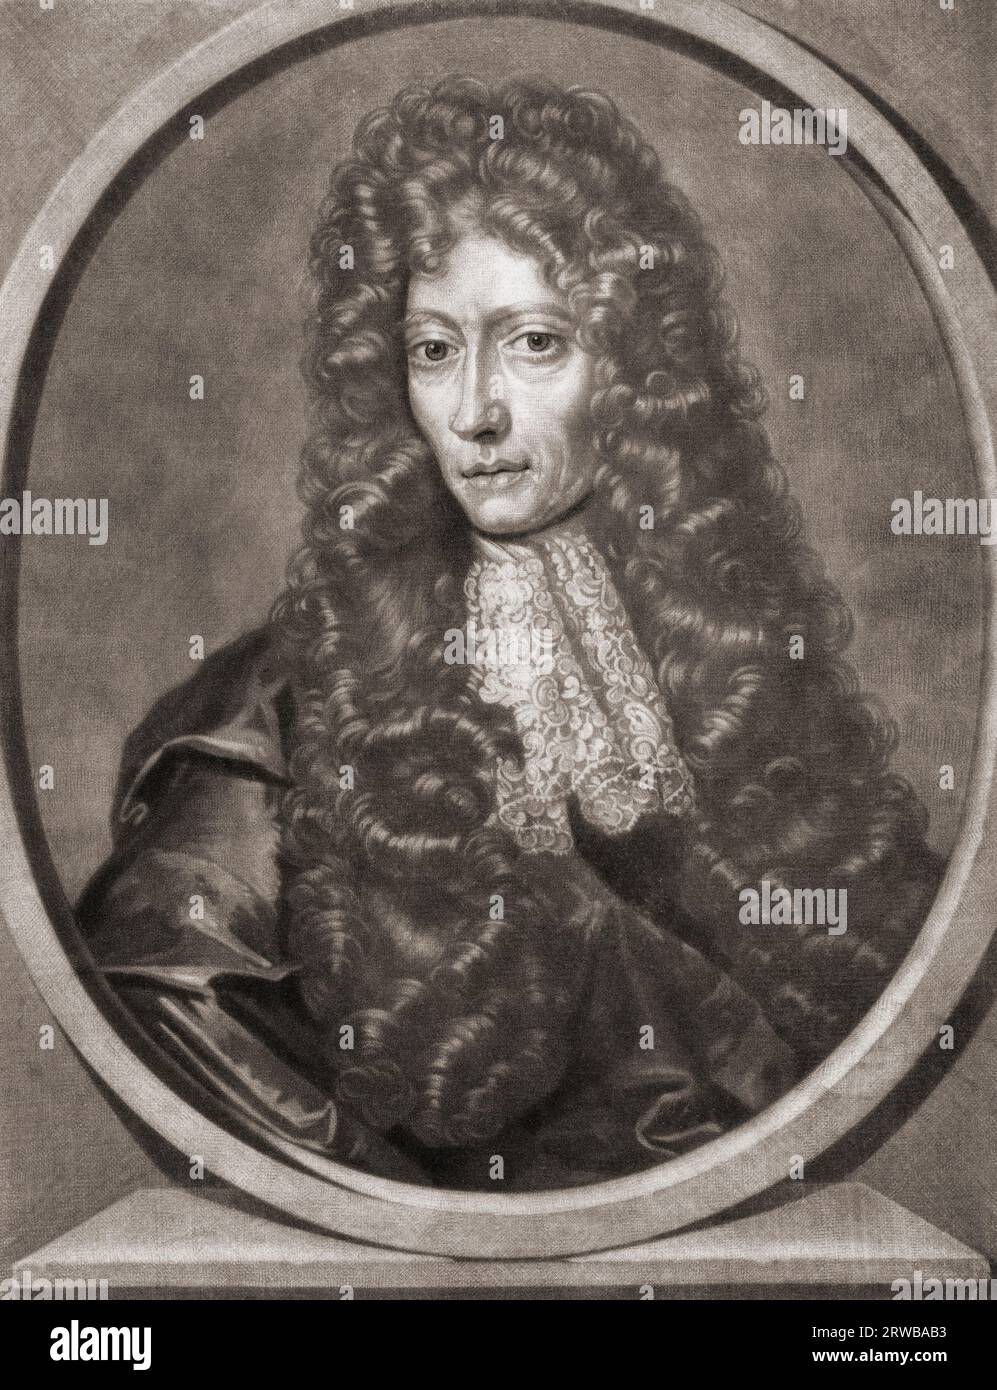 Robert Boyle, 1627 - 1691. Britisch-irischer Chemiker, Naturphilosoph, Physiker und Erfinder. Aus einem Druck von Pieter Schenk. Stockfoto